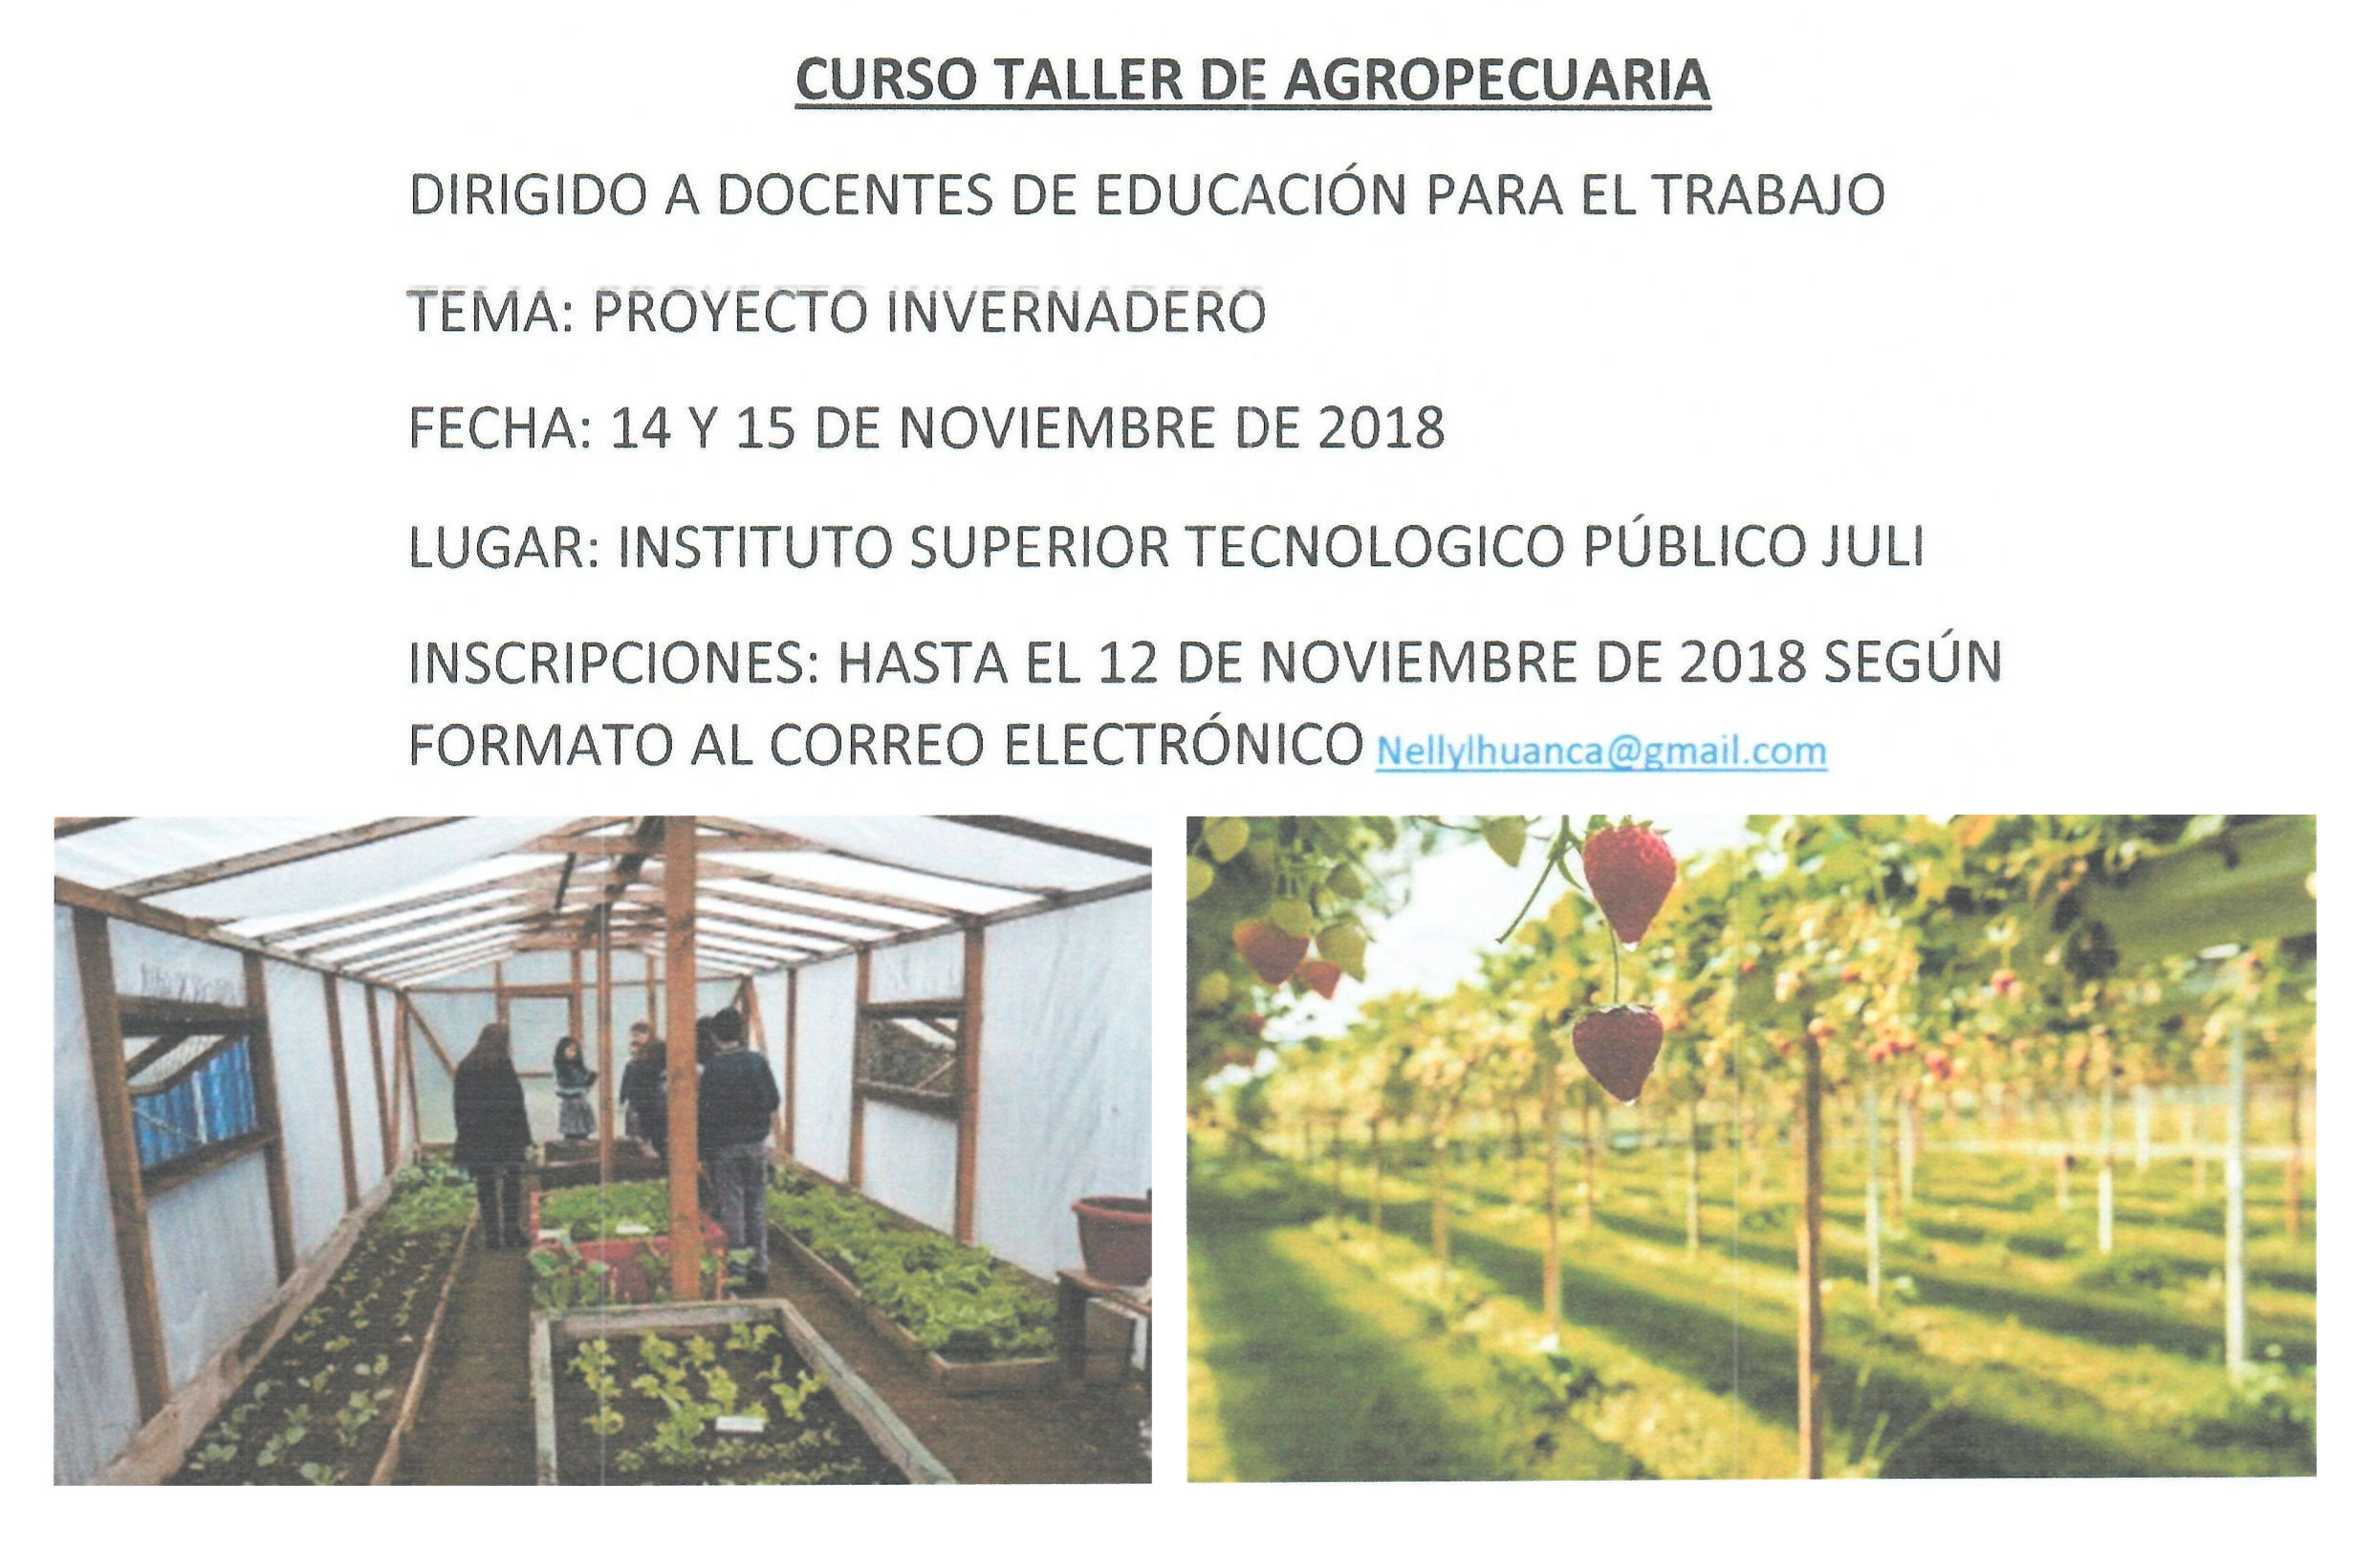 CURSO TALLER DE AGROPECUARIA – DIRIGIDO A DOCENTES DE EDUCACIÓN PARA EL TRABAJO